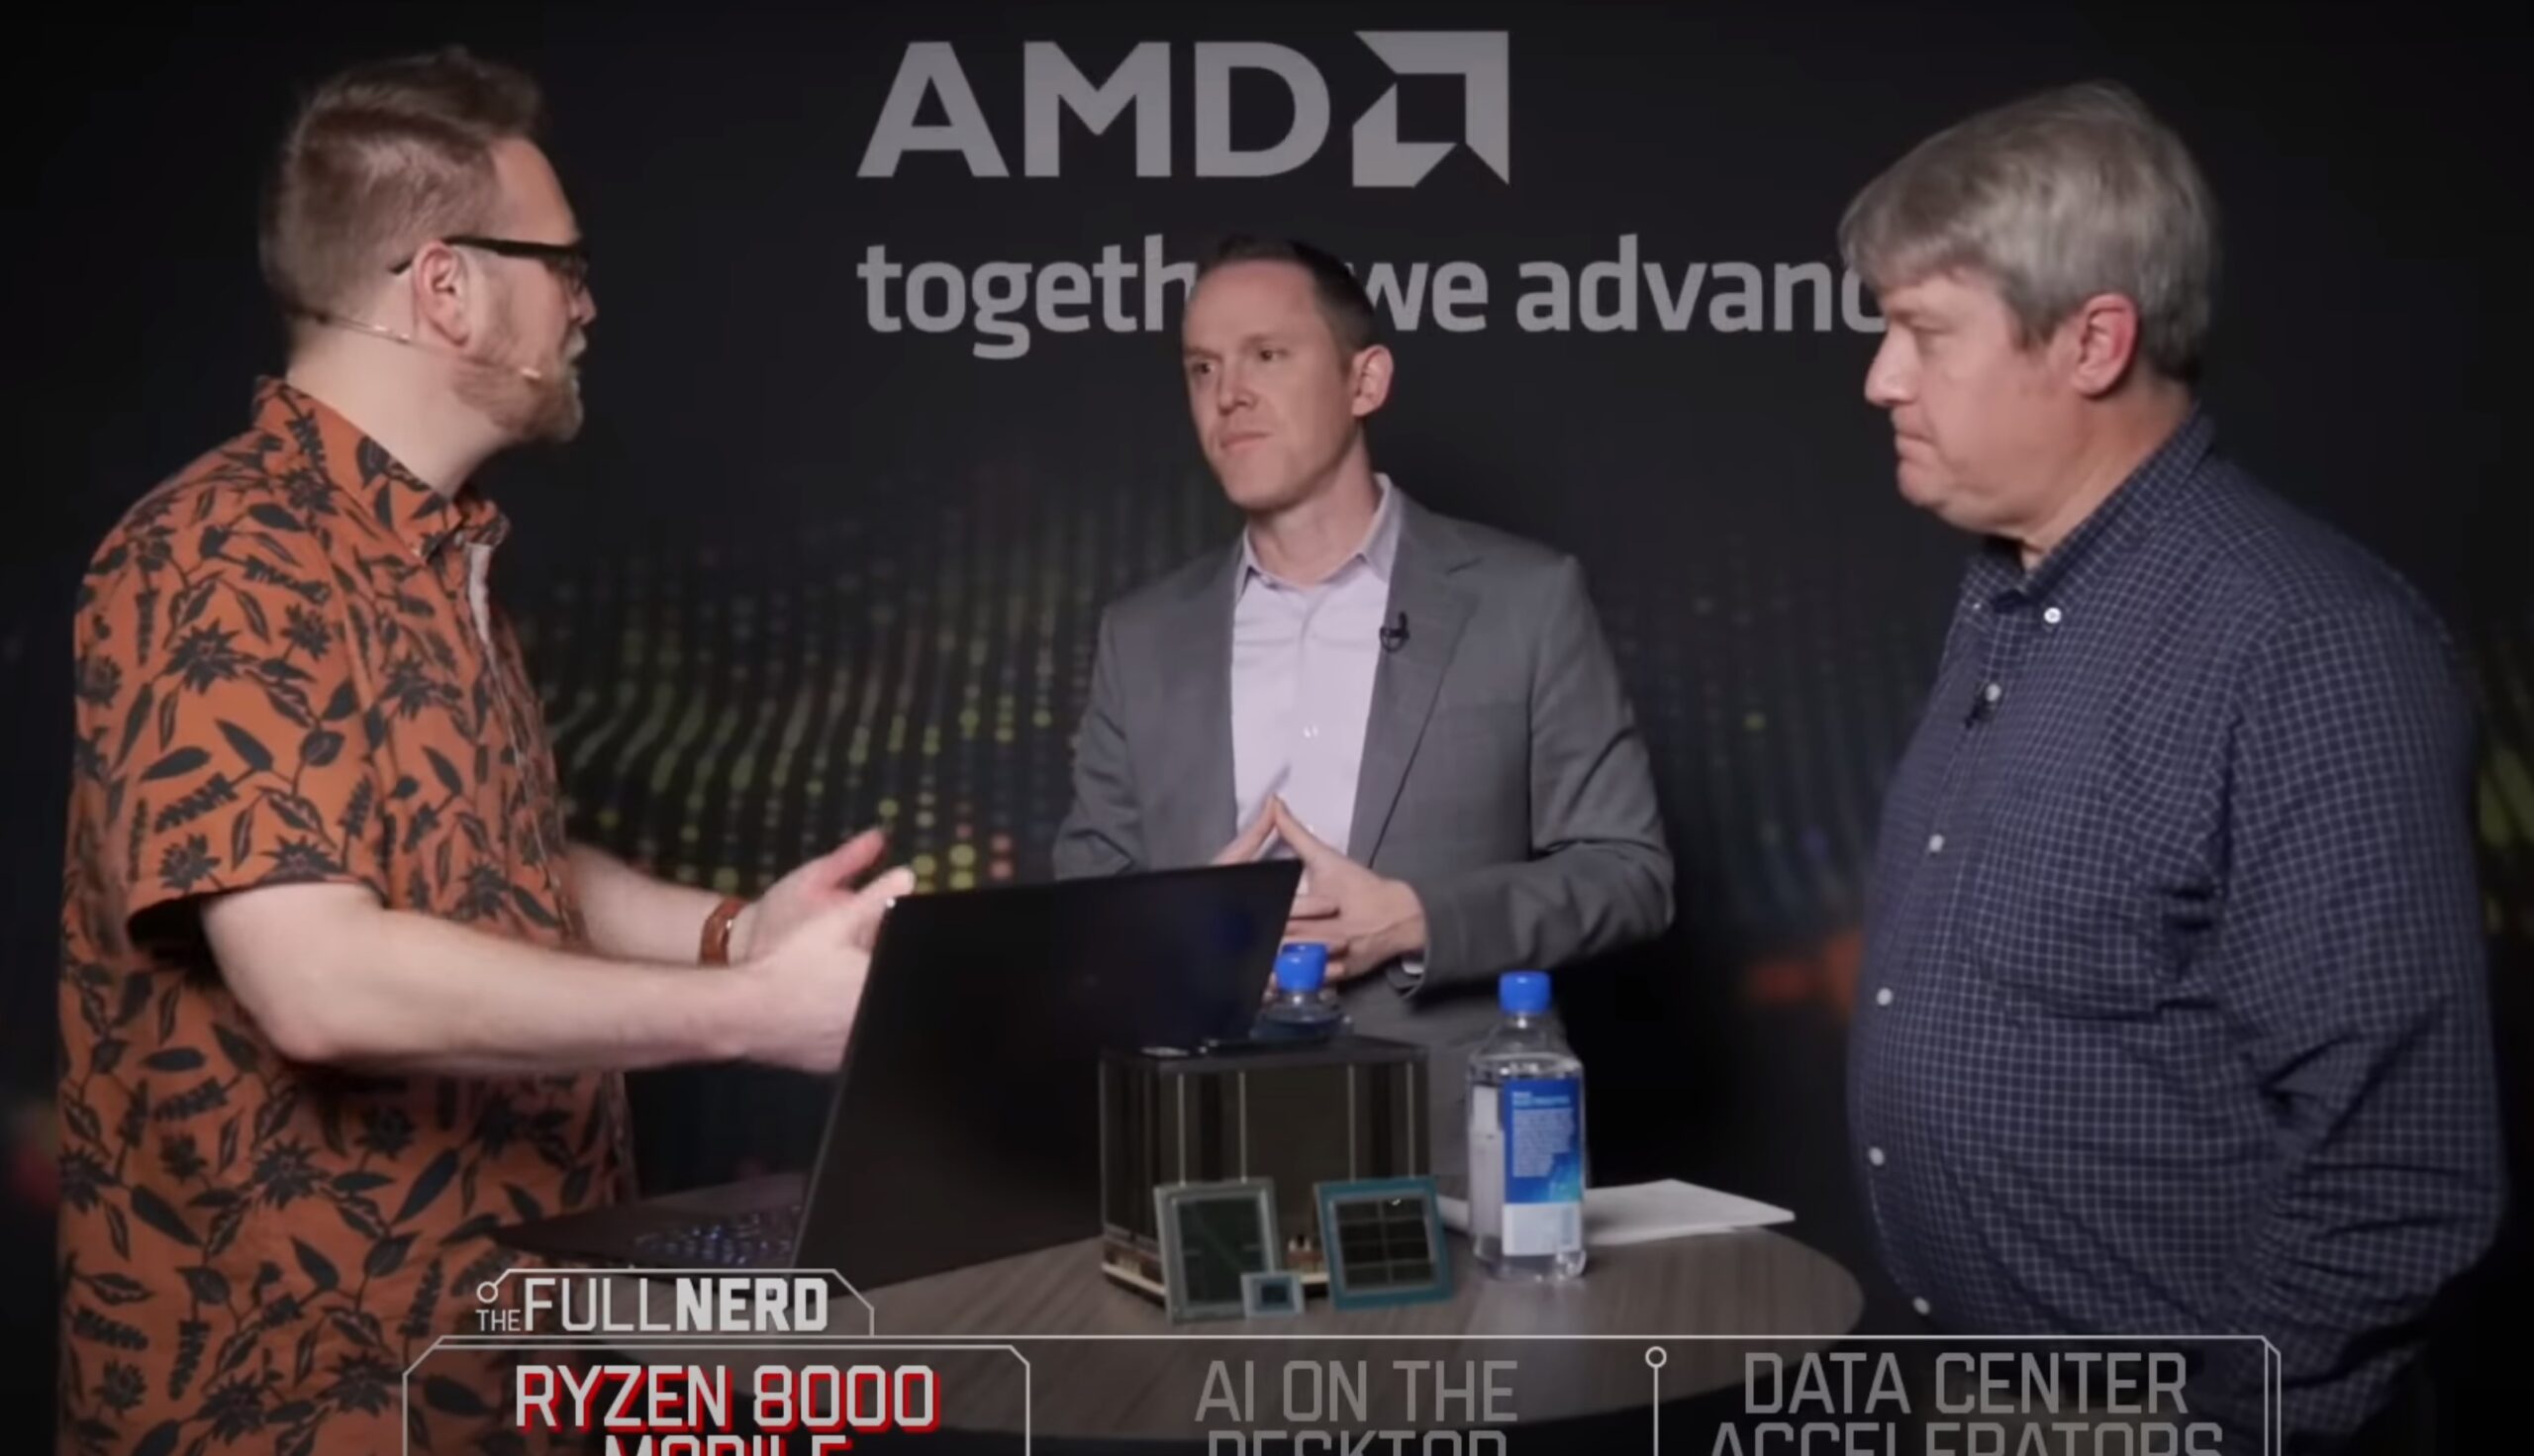 الطالب الذي يذاكر كثيرا: يتعمق المسؤولون التنفيذيون في شركة AMD في أجهزة الكمبيوتر المزودة بتقنية الذكاء الاصطناعي، Threadripper 7000